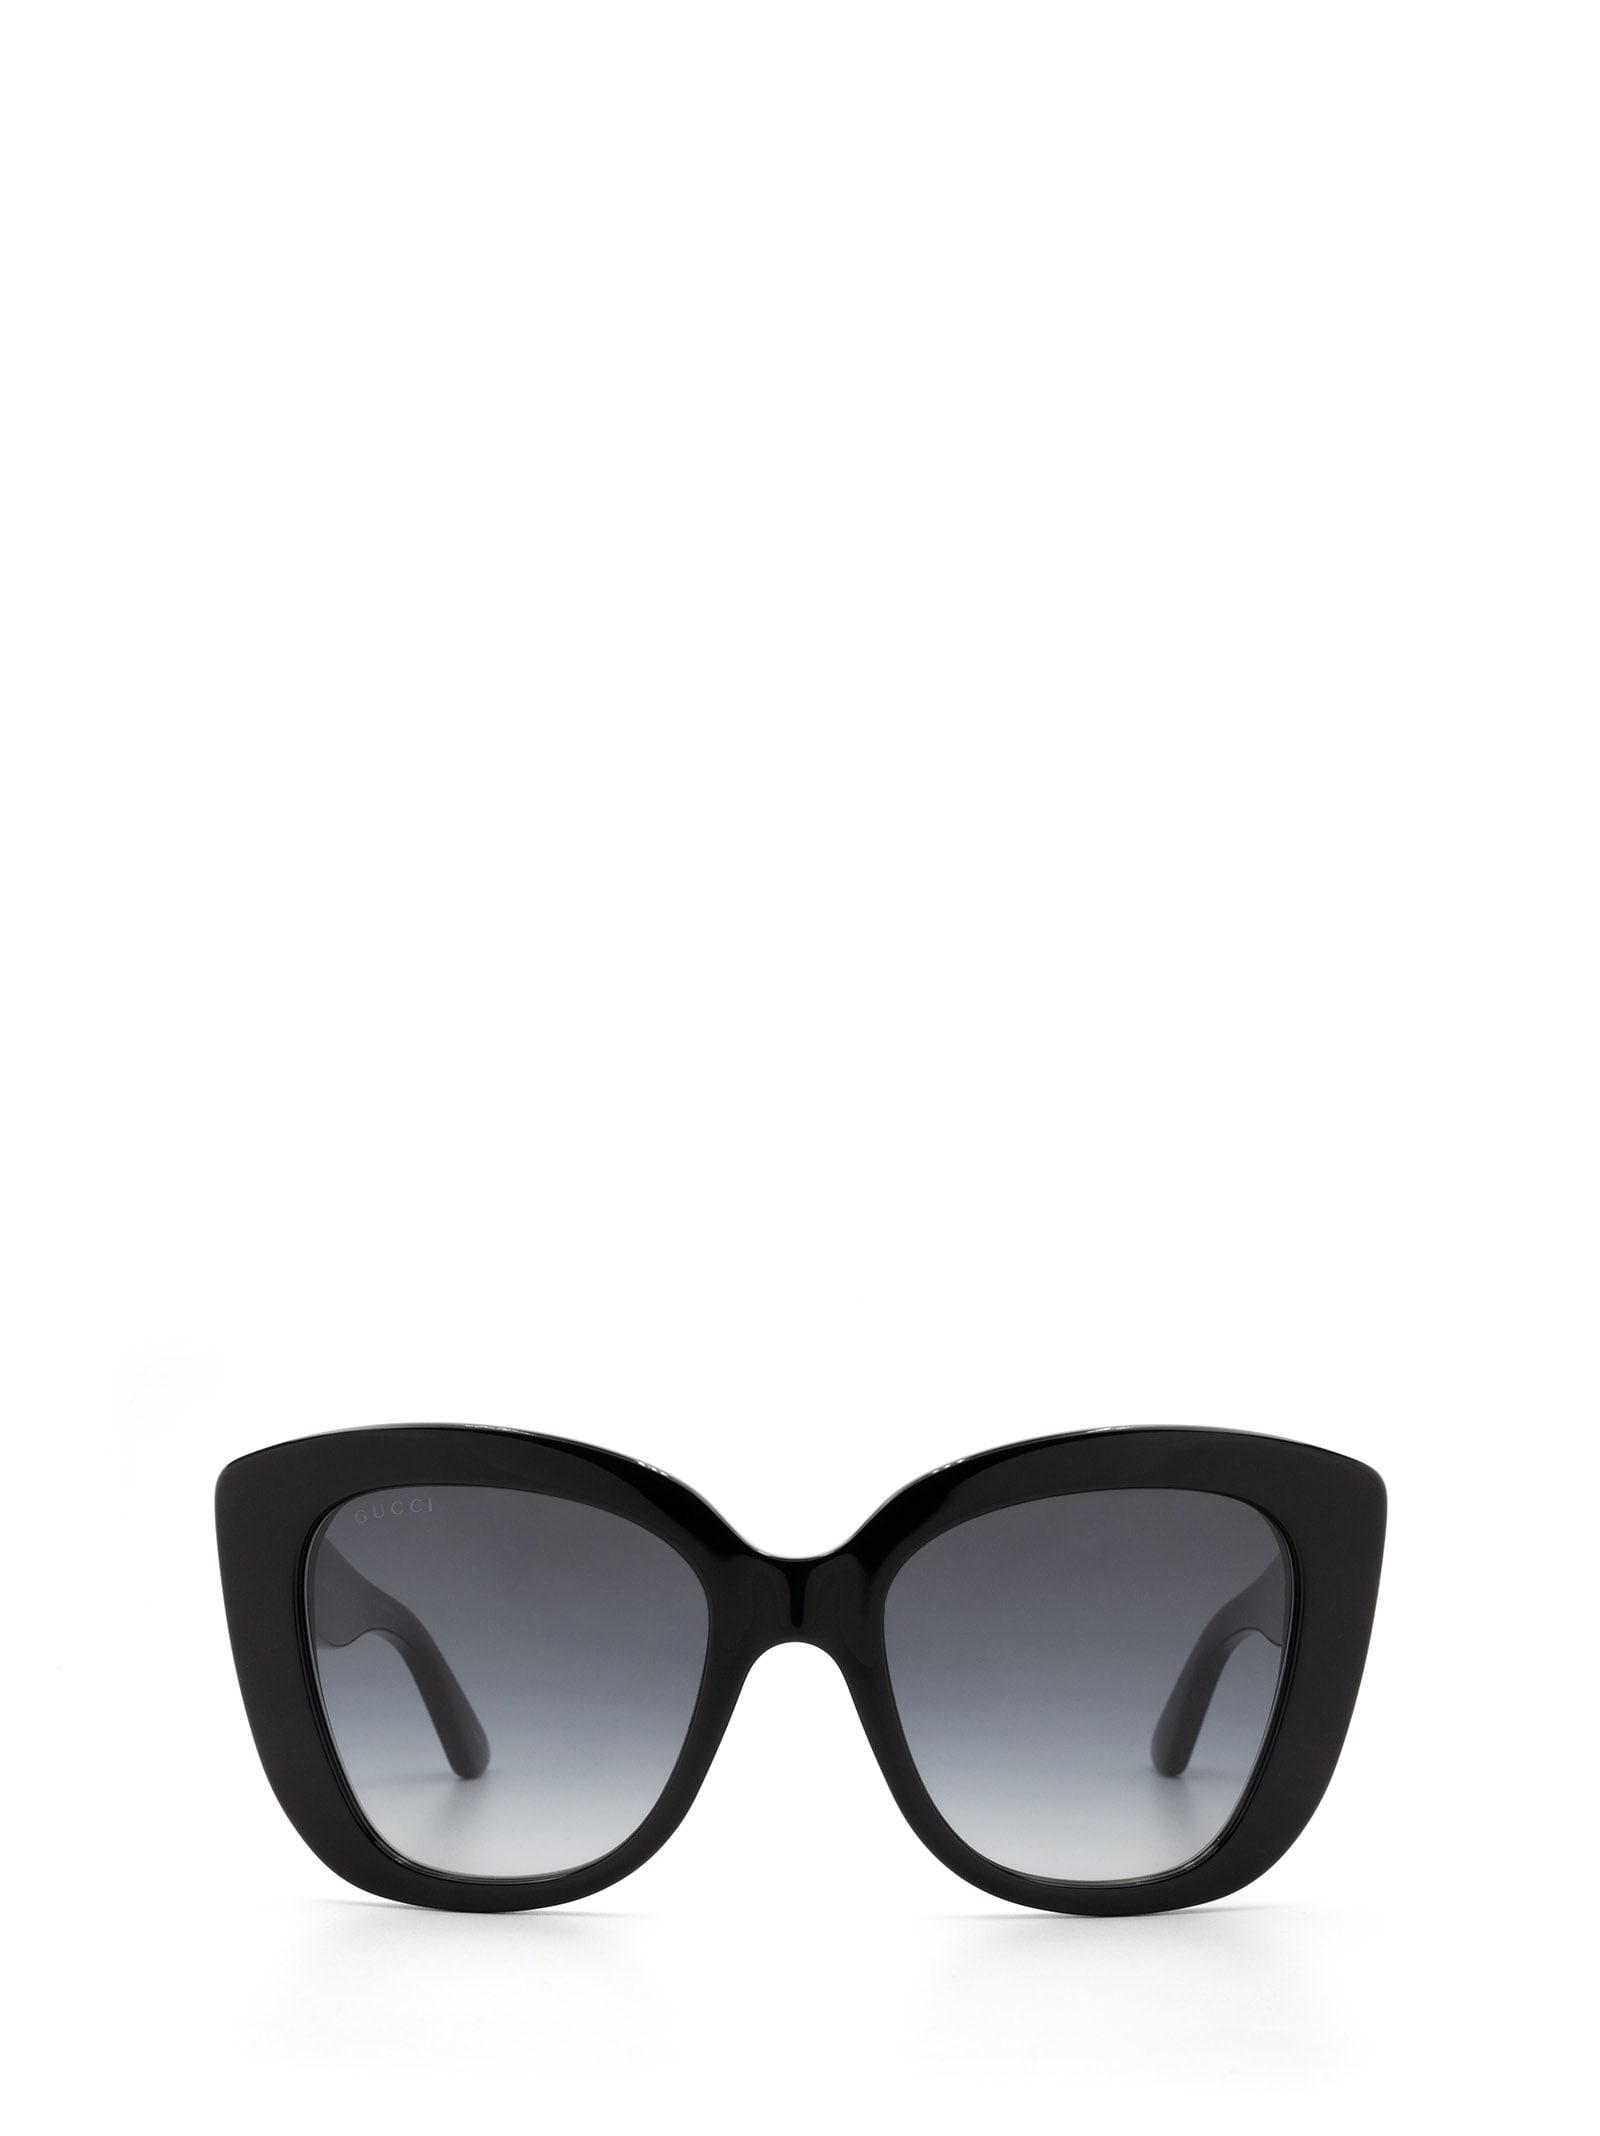 Gucci Acetate Sunglasses in Black - Save 47% | Lyst